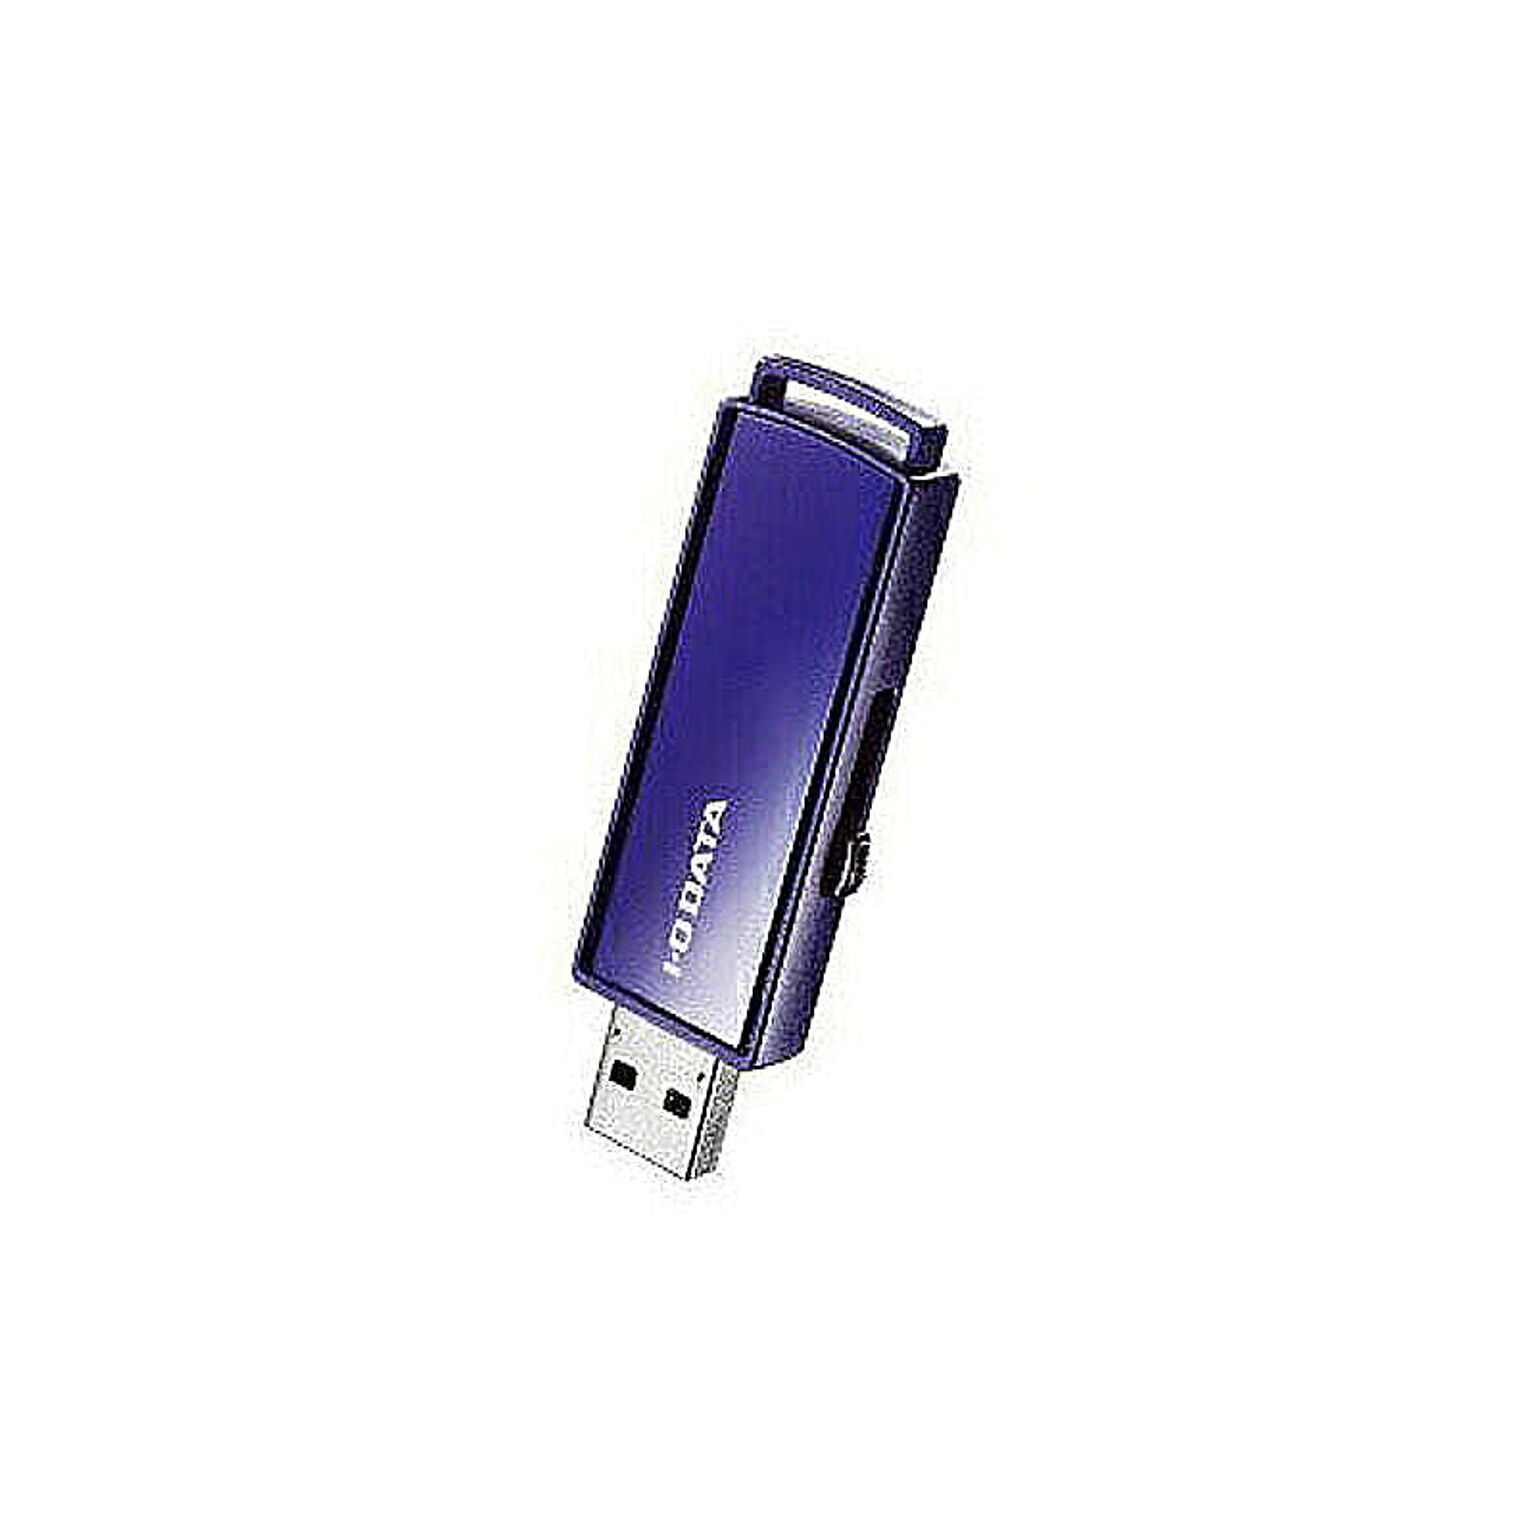 IOデータ USBメモリ 16GB USB3.1 USB TypeA スライド式 EU3-PW16GR 管理No. 4957180138879